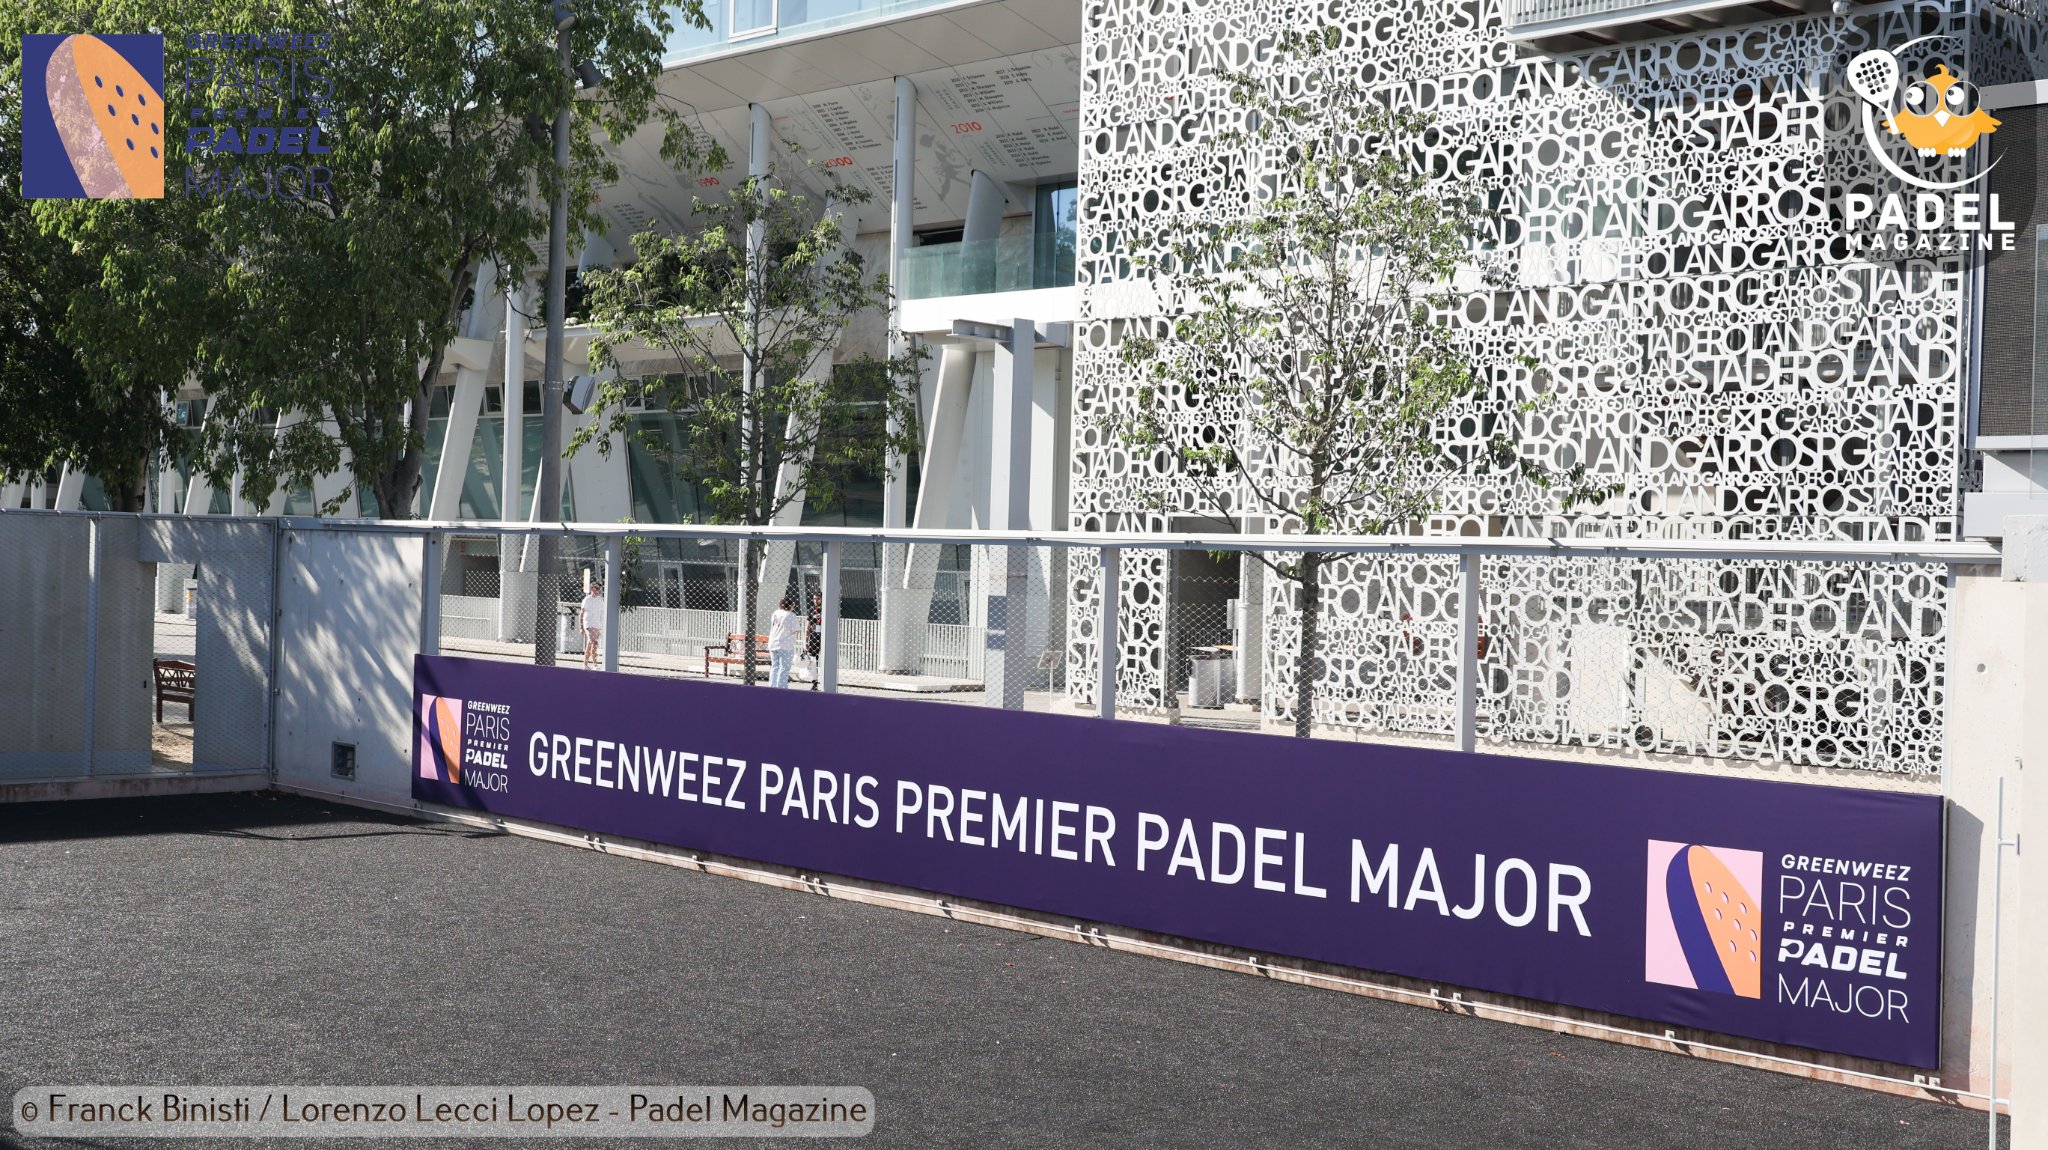 Greenweez Paris Premier Padel Major : resultados del trimestre